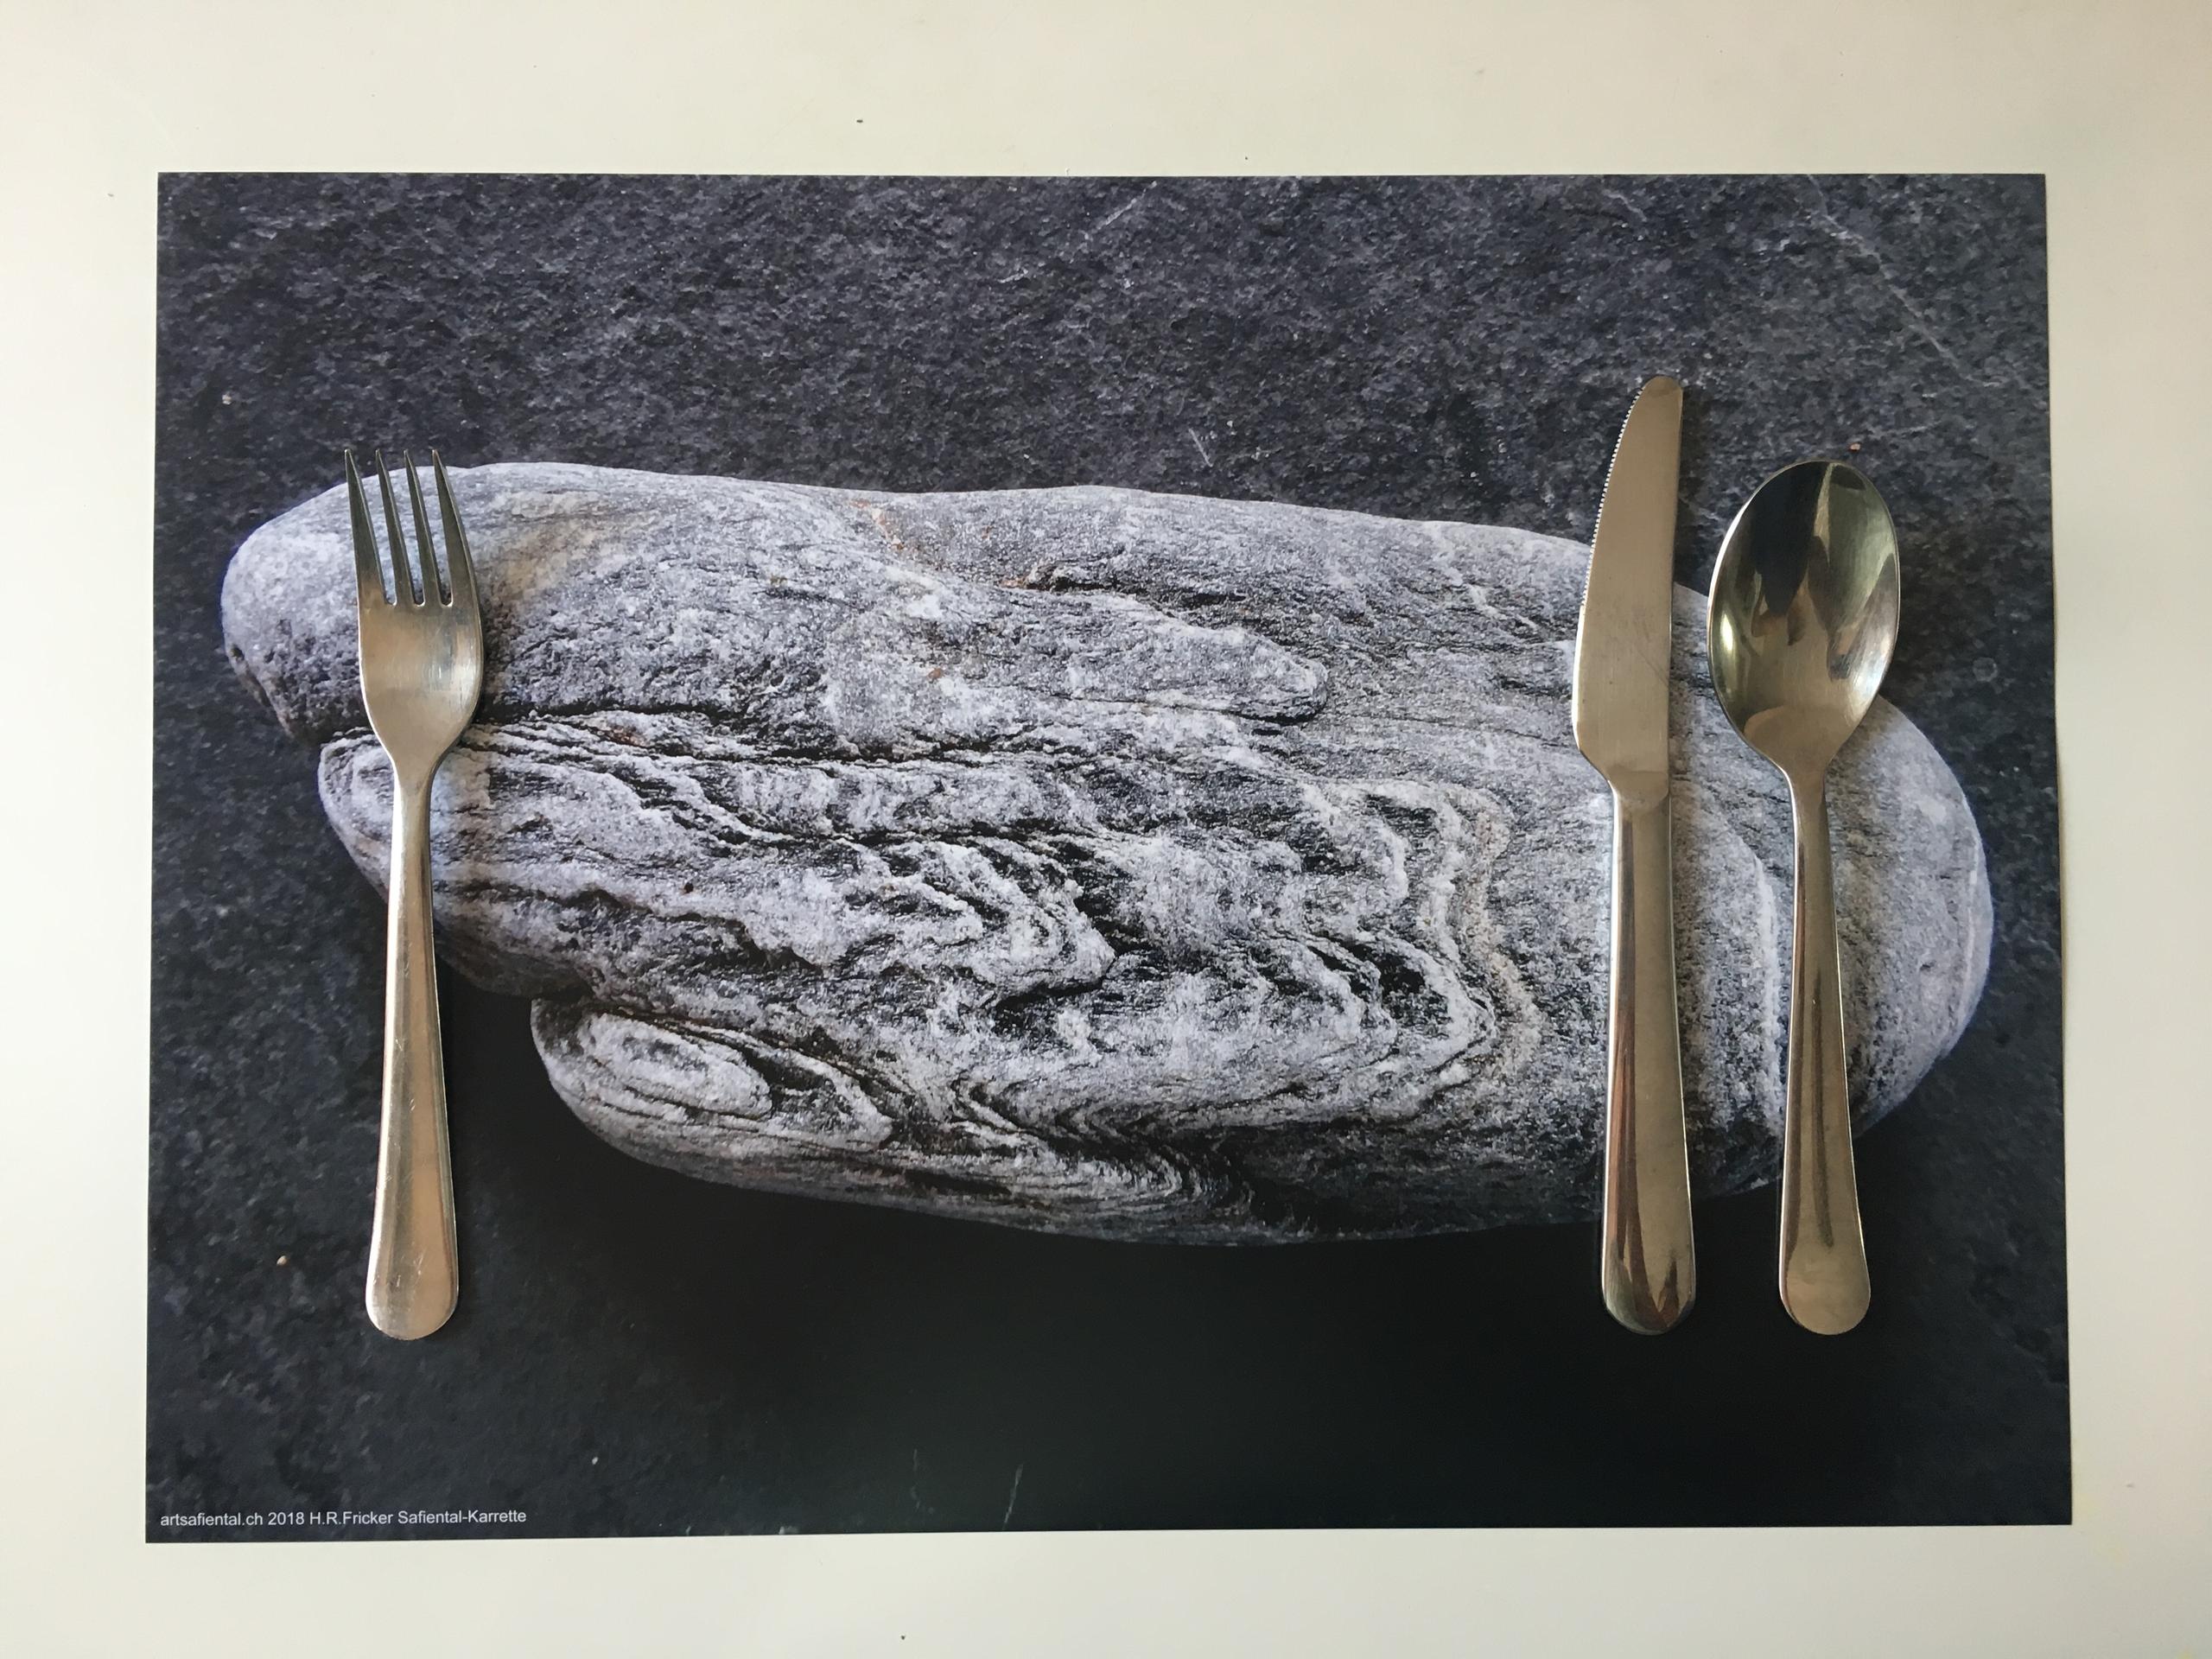 пластиковая скатерть на стол с фотографией камня, вилкой, ножом и ложкой